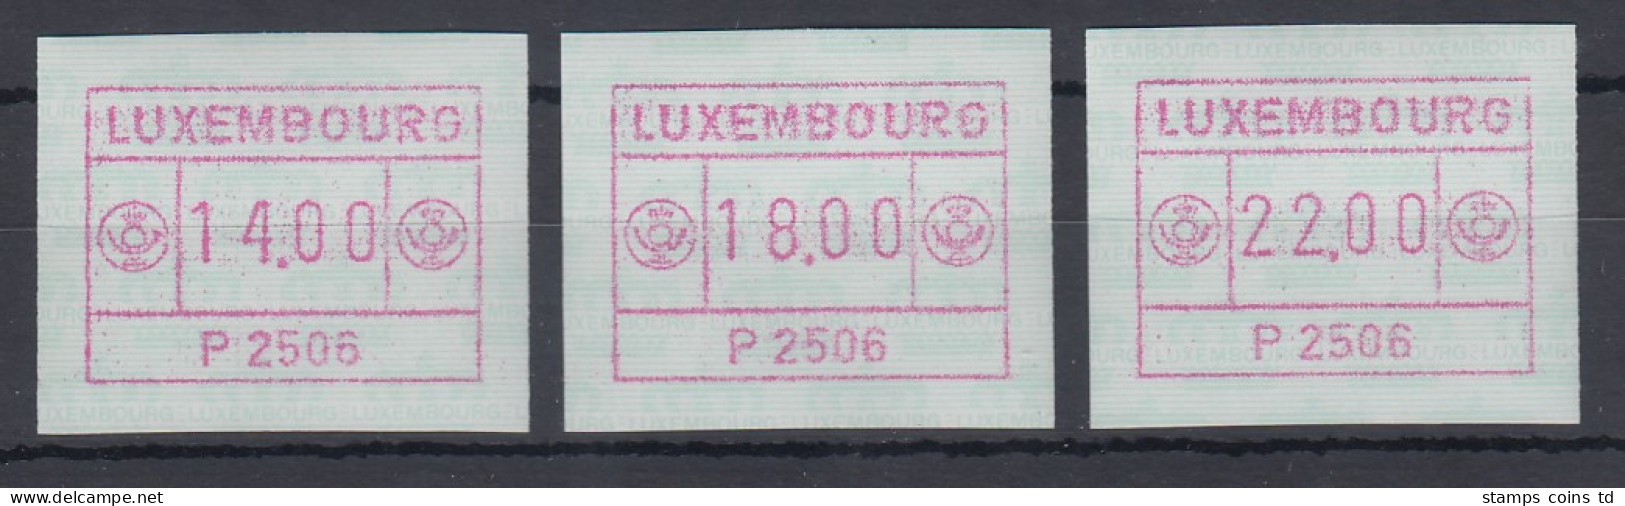 Luxemburg ATM P2506 Tastensatz 14-18-22 **   - Postage Labels